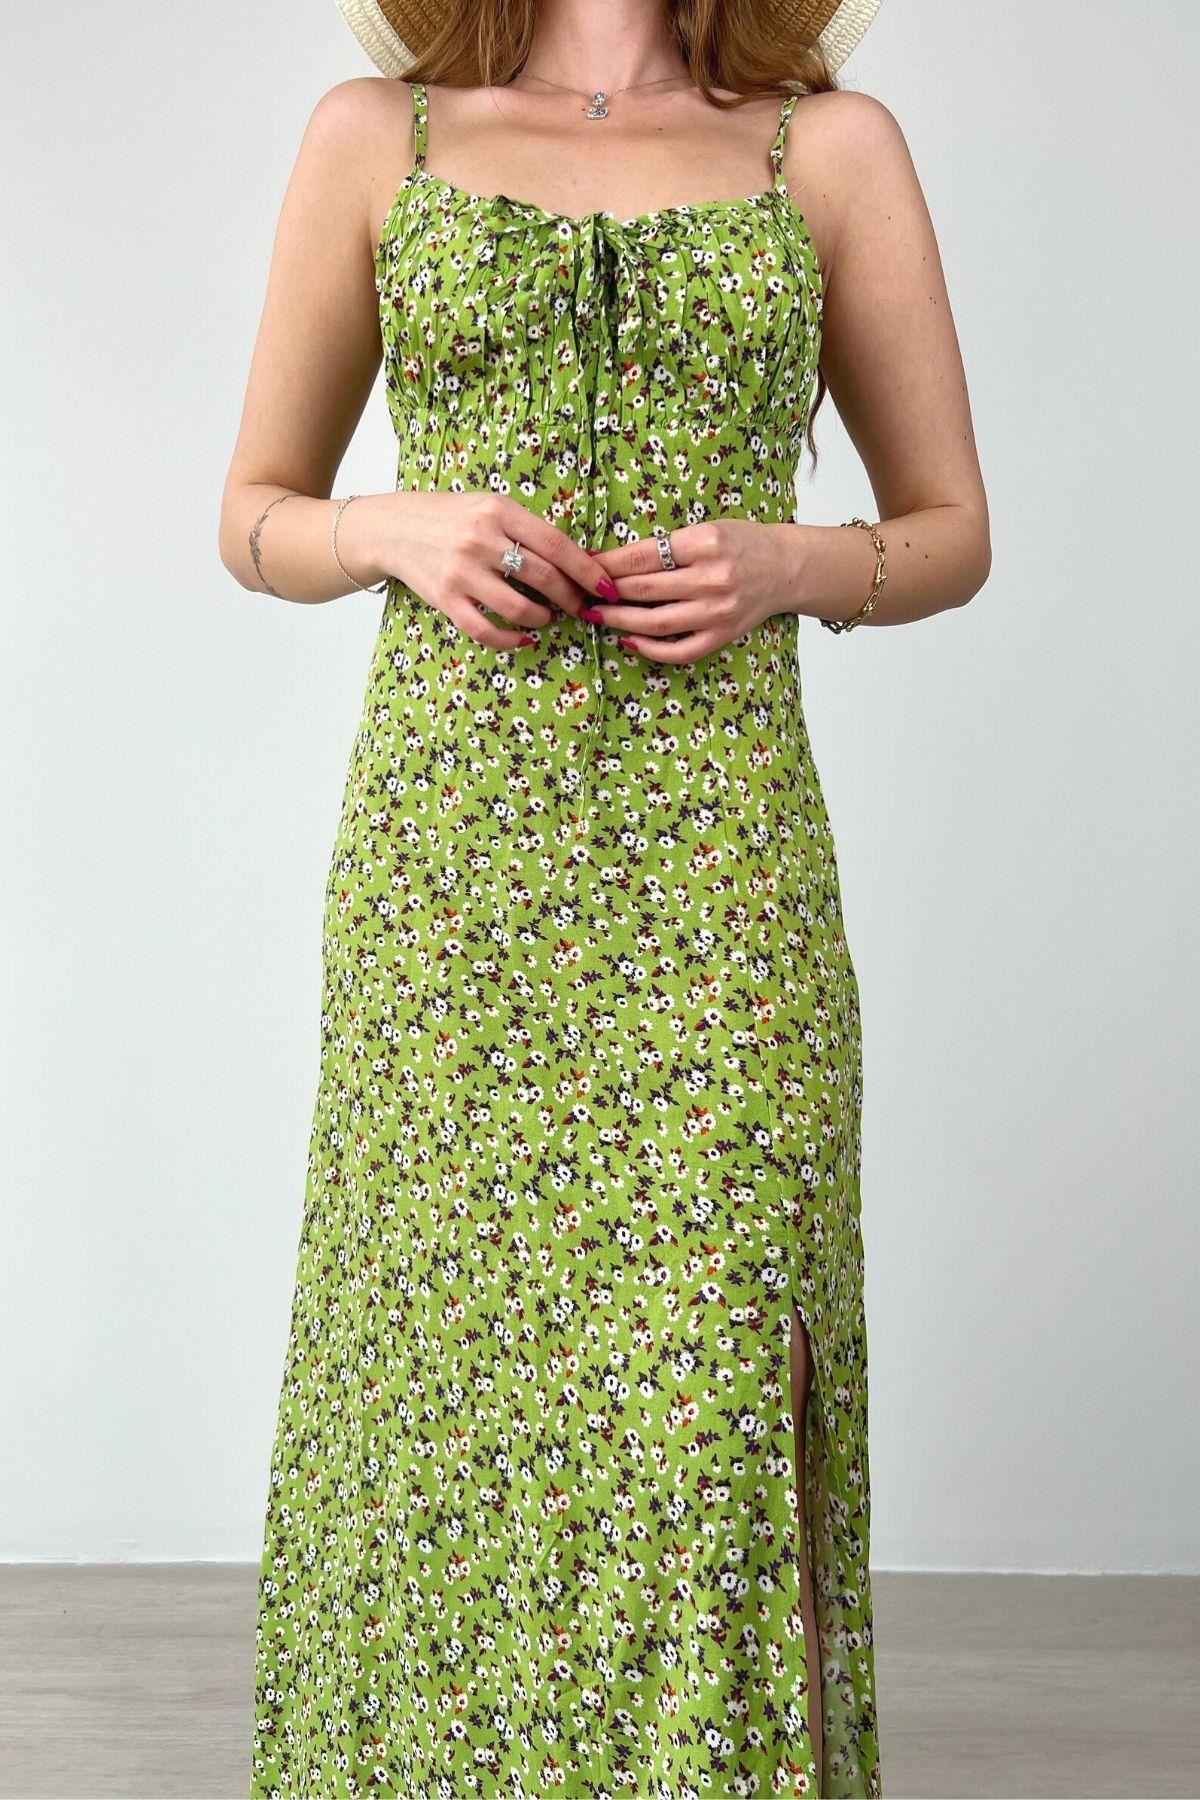 Kadın Askılı Bilek Boy Yeşil Yırtmaçlı Yazlık Dokuma Elbise 12C-2108